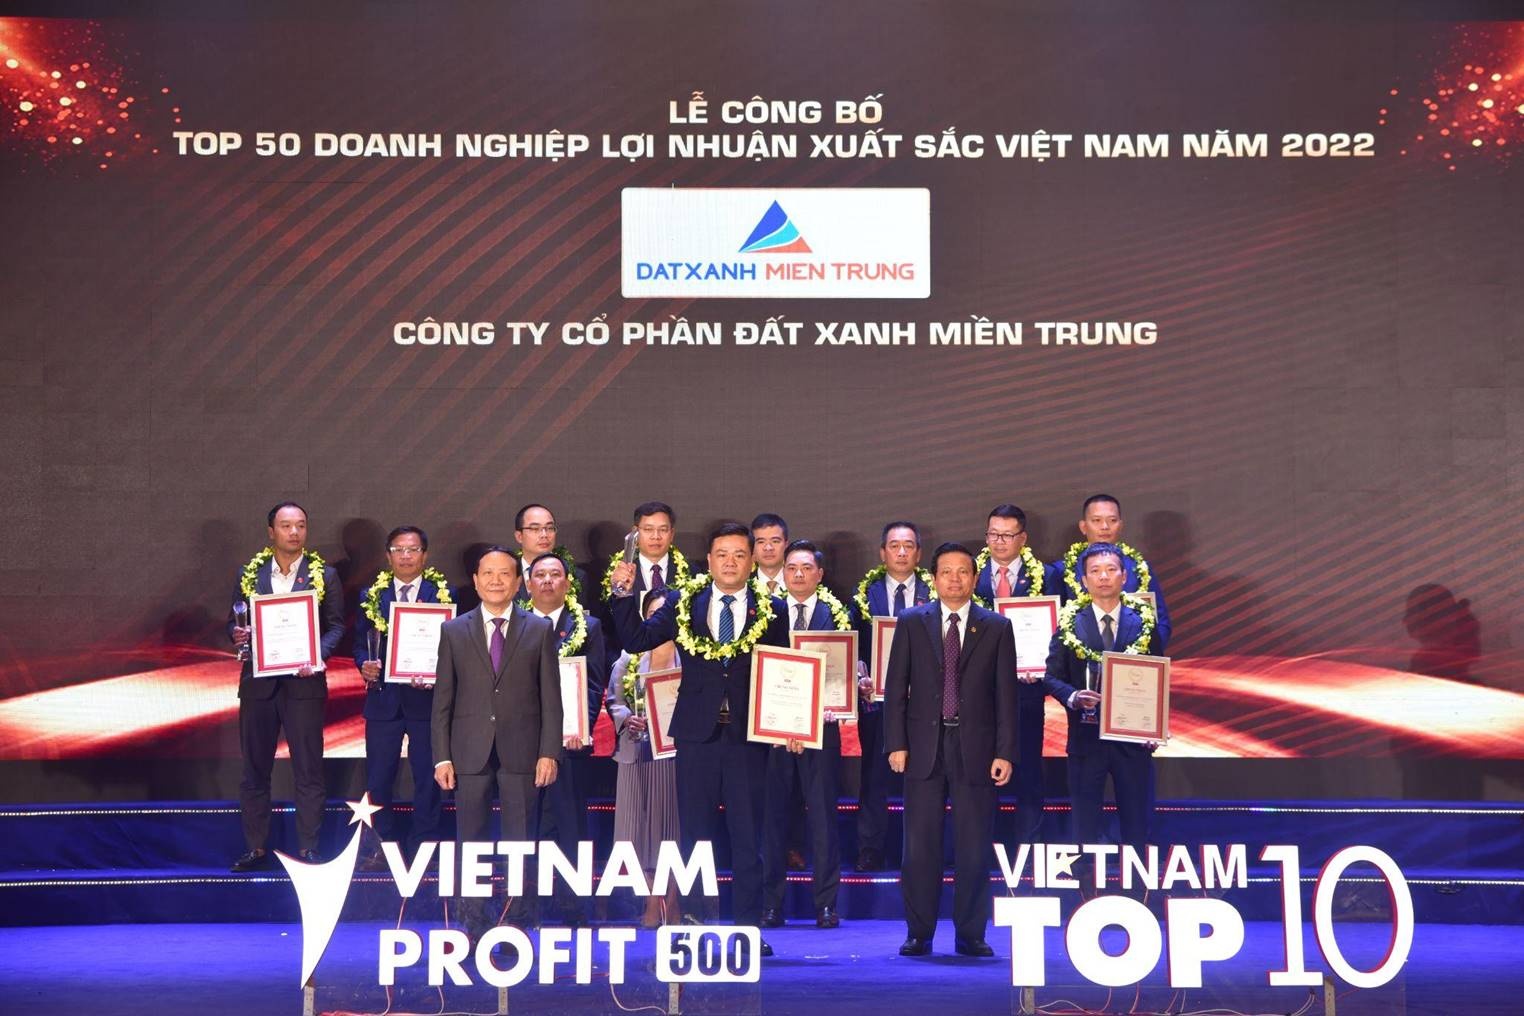 Đất Xanh Miền Trung - Top 50 doanh nghiệp lợi nhuận xuất sắc Việt Nam 2022